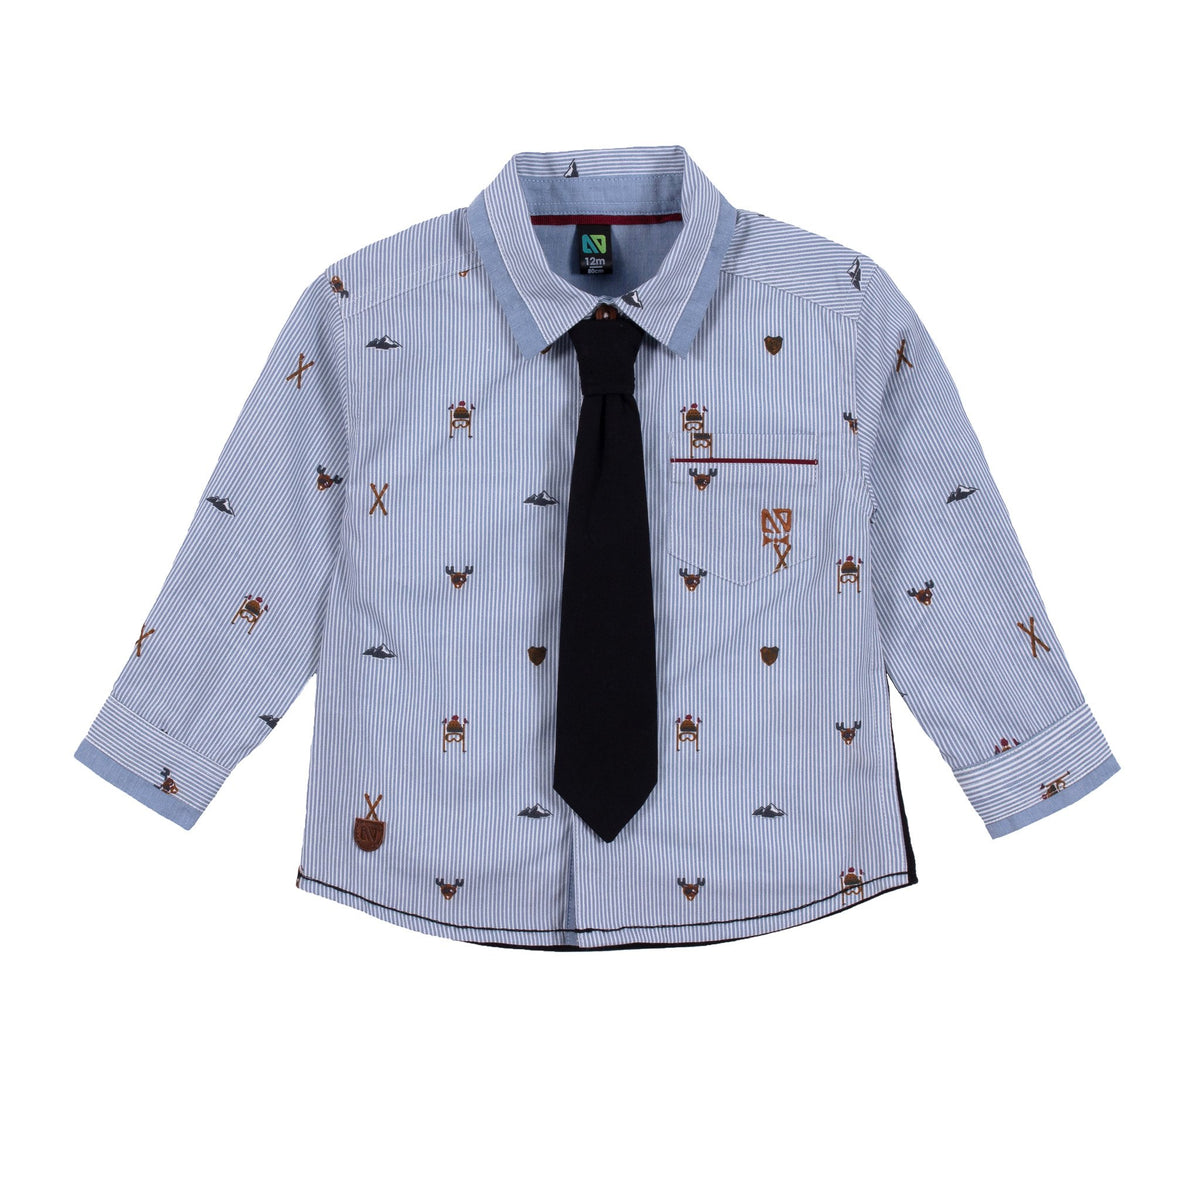 Chemise manches longues pour bébé garçon par Nanö - F2175-05 Blanc - Boutique Flos, vêtements pour bébés et enfants